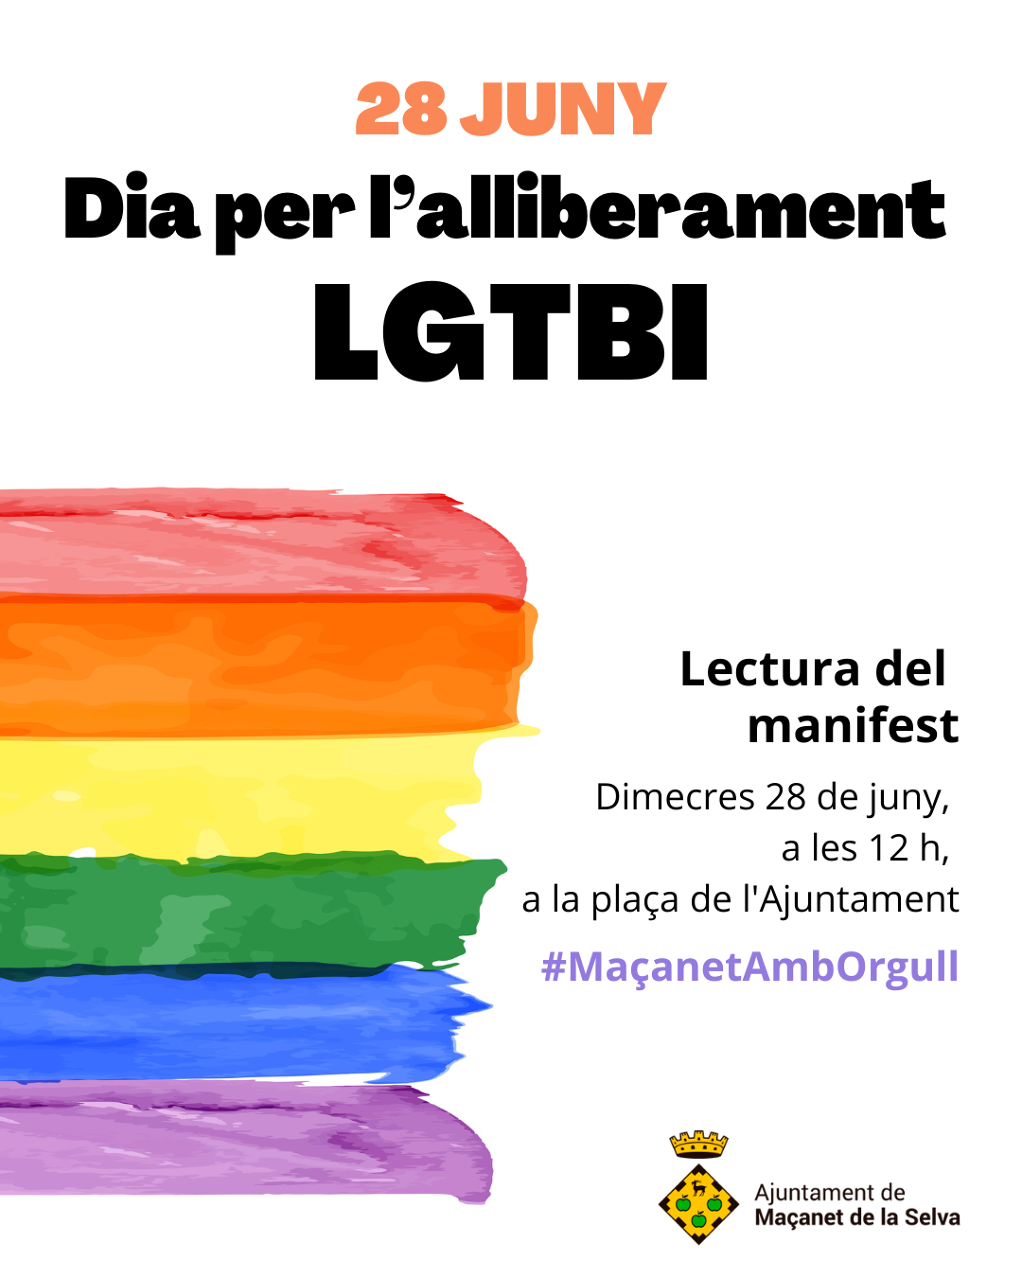 Lectura del manifest del Dia per l'alliberament LGTBI - post-de-instagram-vertical-llamado-a-la-accion-ilustrado-a-mano-beige-verde.png